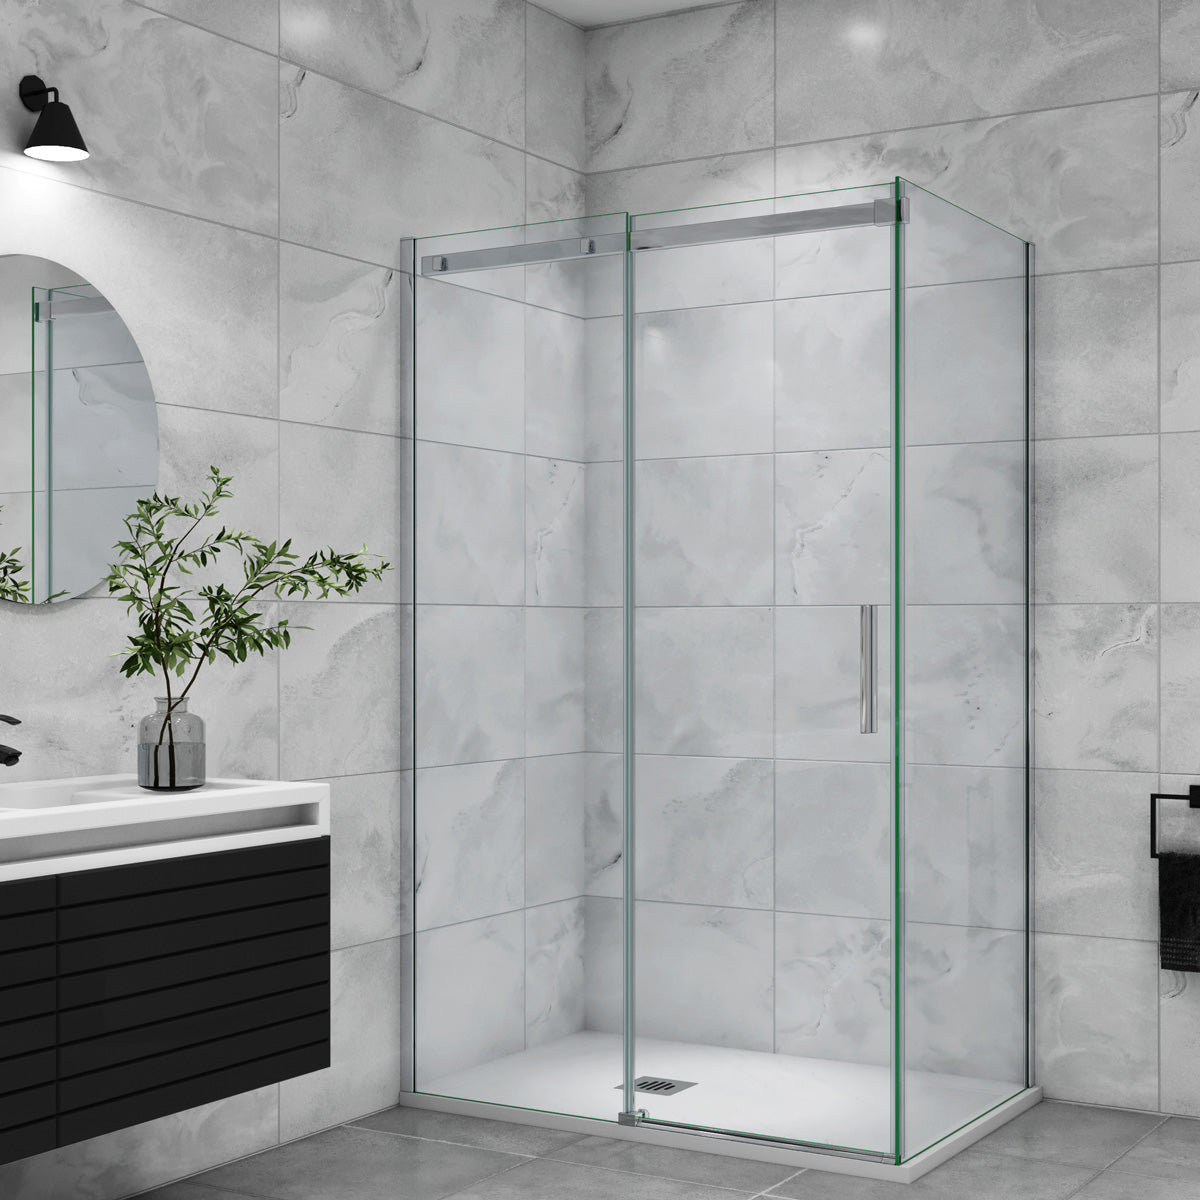 Duschtür+Seitenwand Schiebetür 100x70 cm Glasstärke 6mm Dusche Duschabtrennung Duschkabine